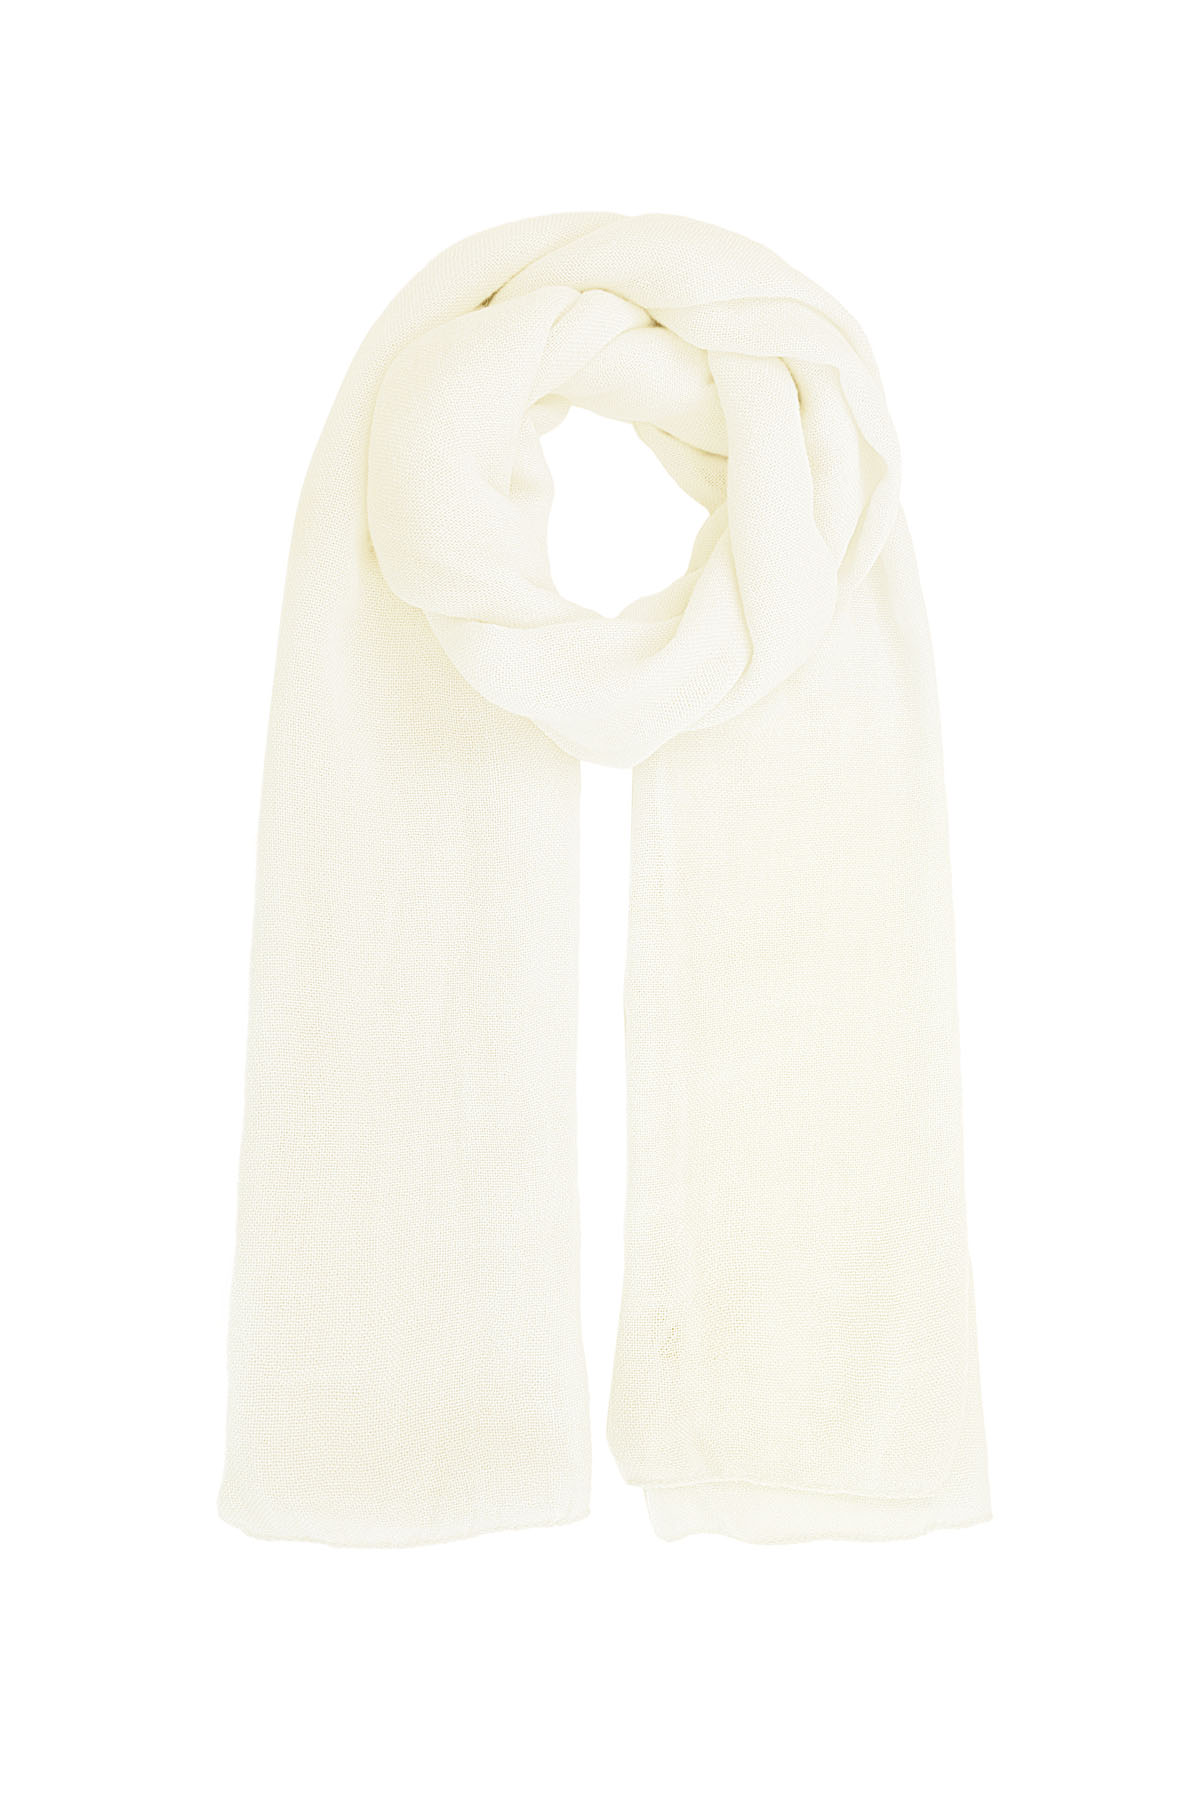 Sjaal effen kleur - wit h5 